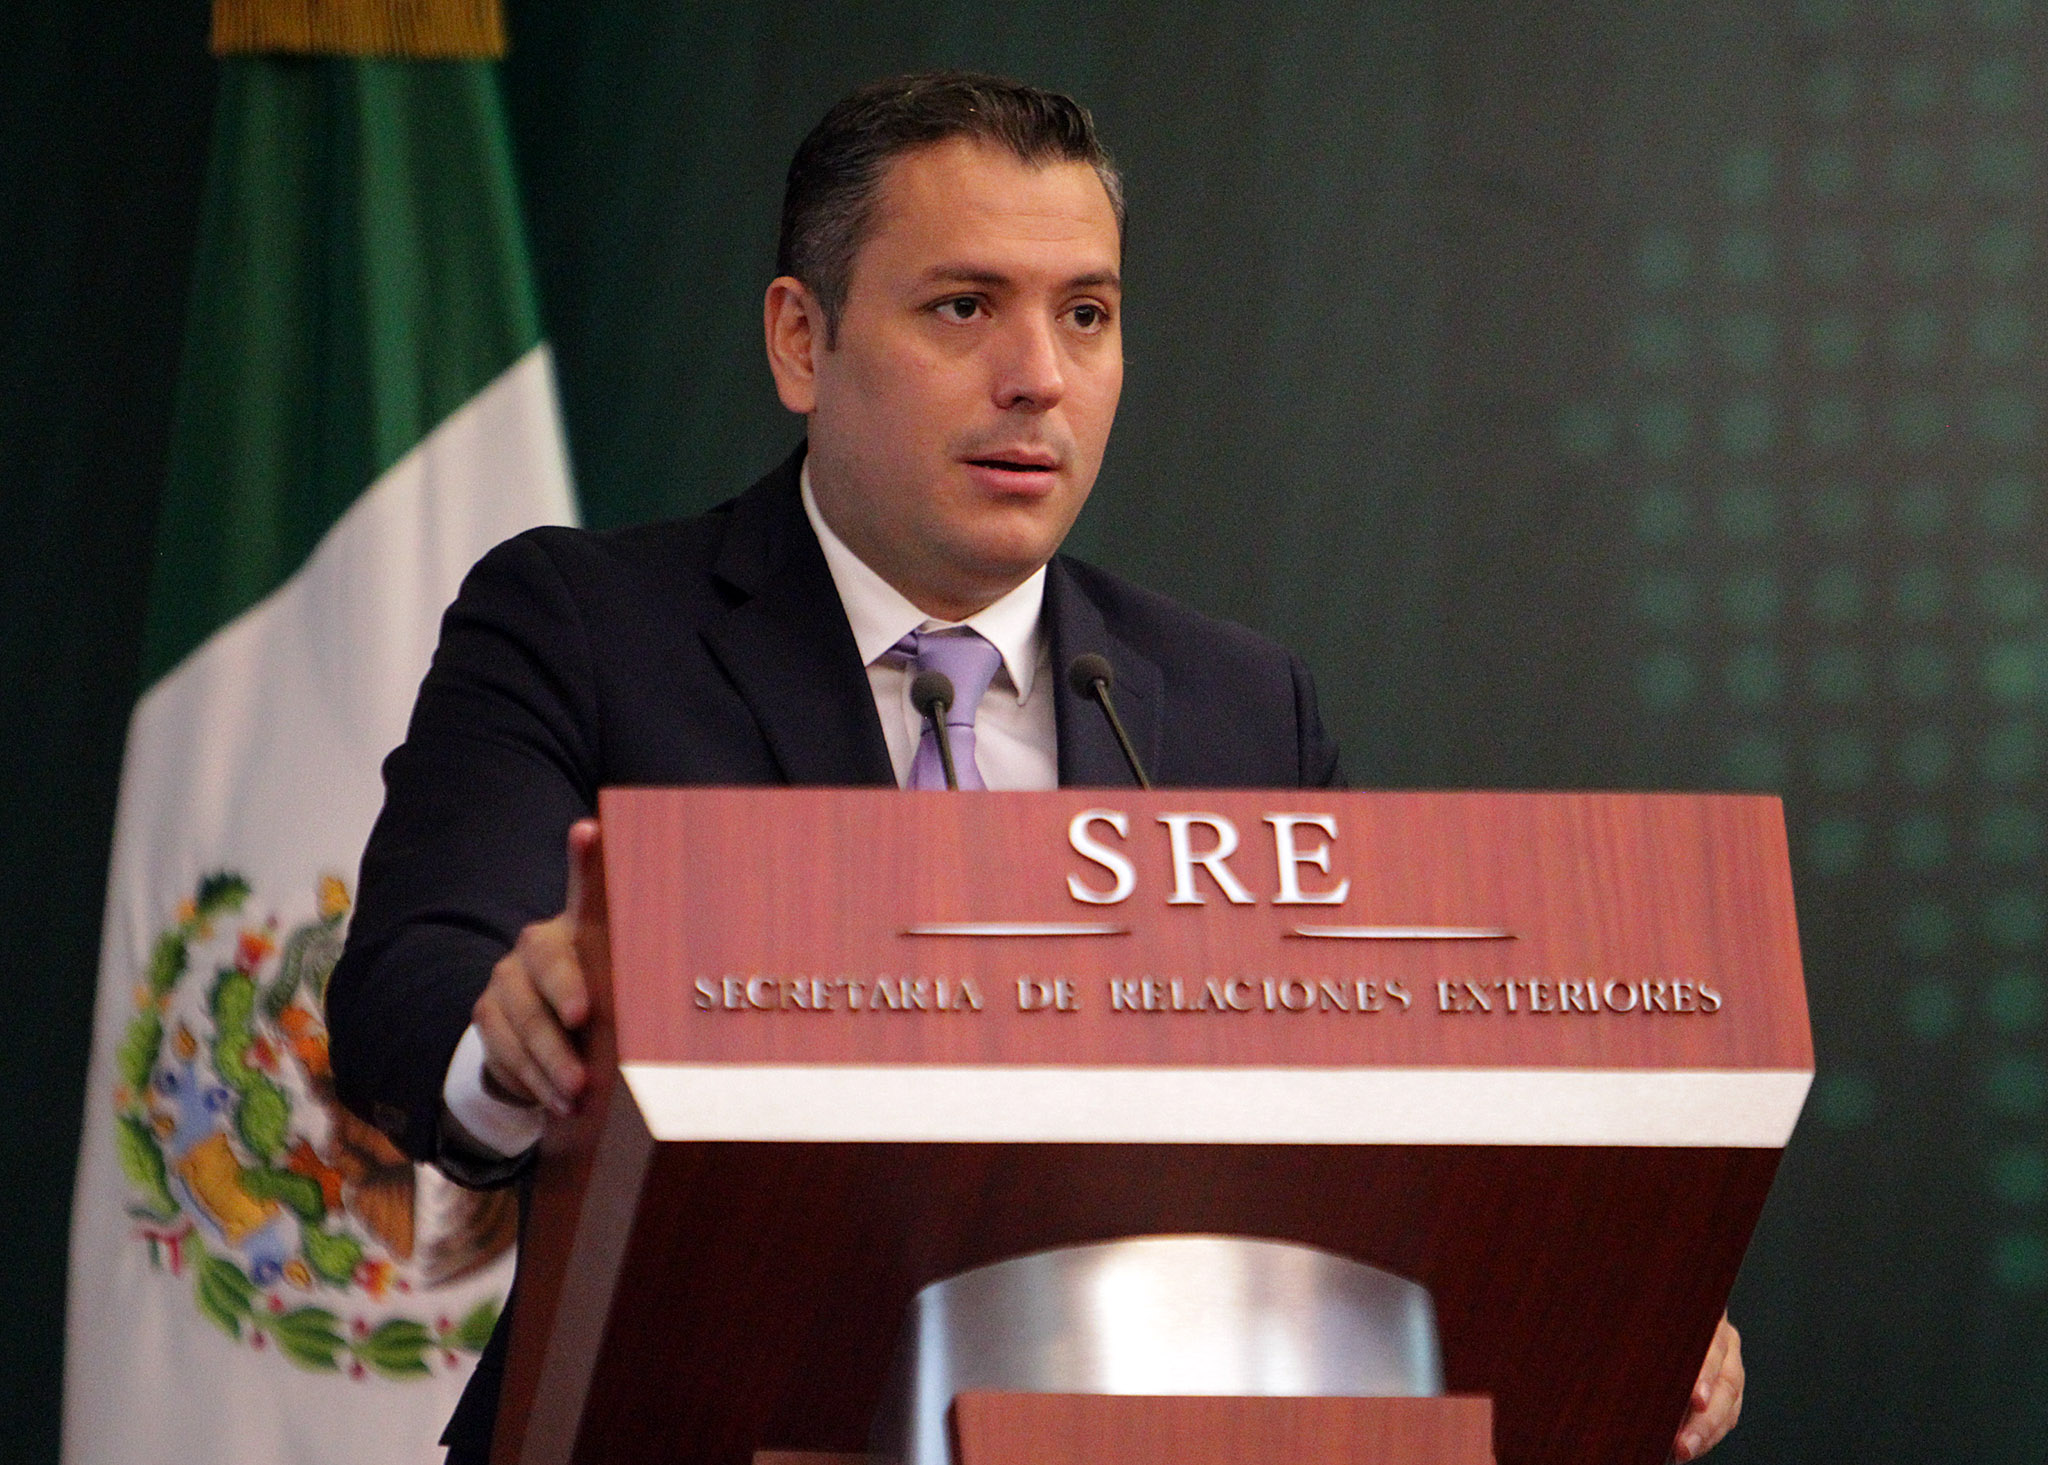 Inauguración del 1er Encuentro de Coordinadores Administrativos del Servicio Exterior Mexicano.